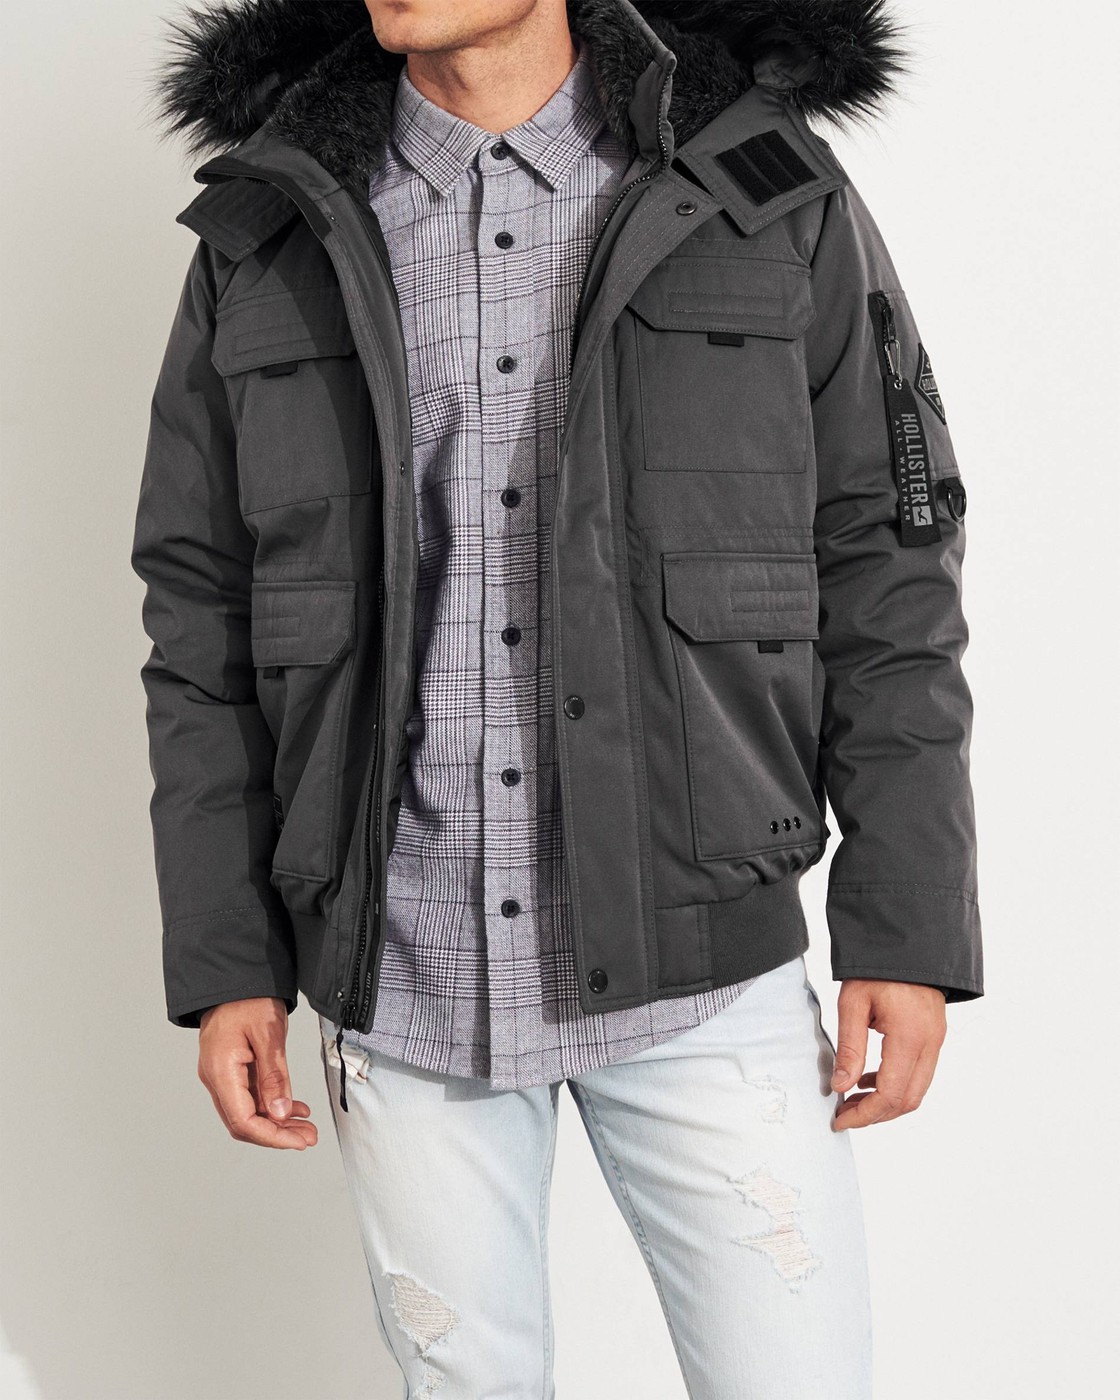 Куртка зимняя - мужская куртка Hollister, XL, XL